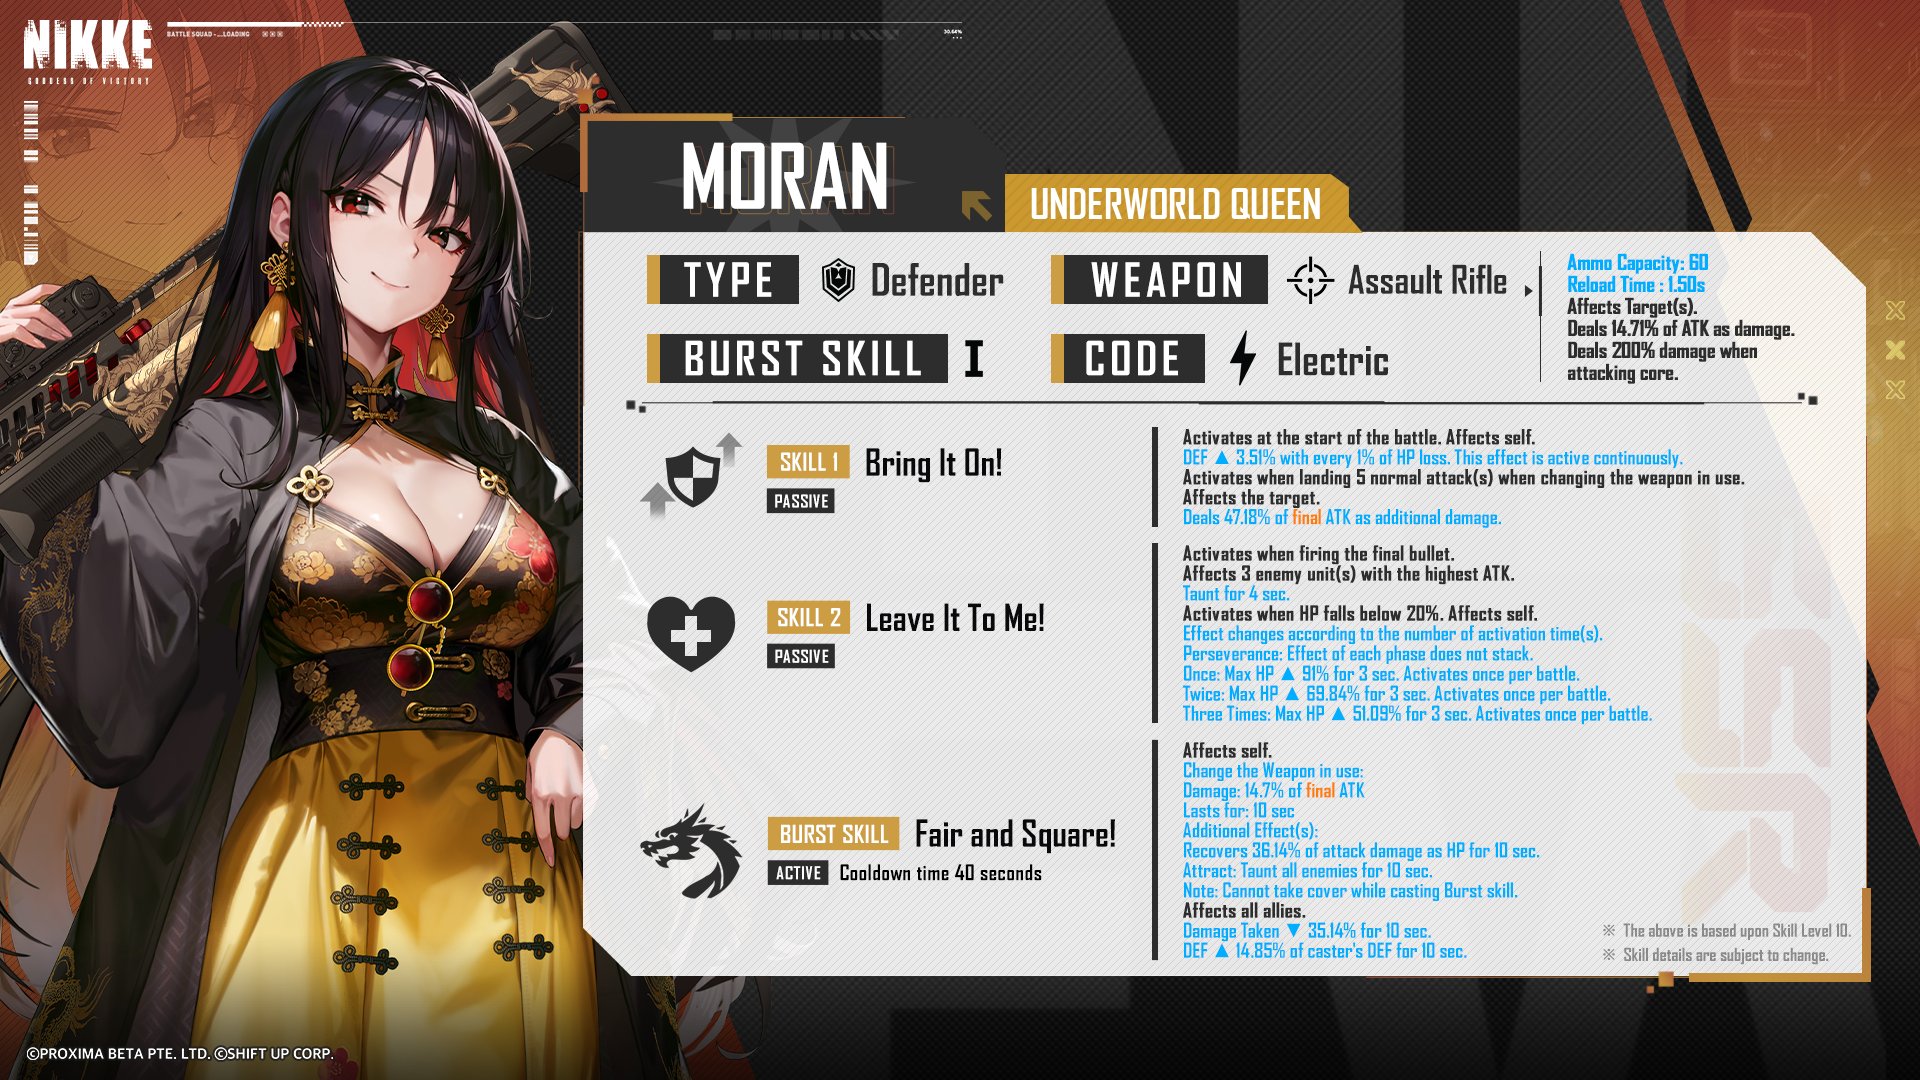 Goddess of Victory: NIKKE, Moran